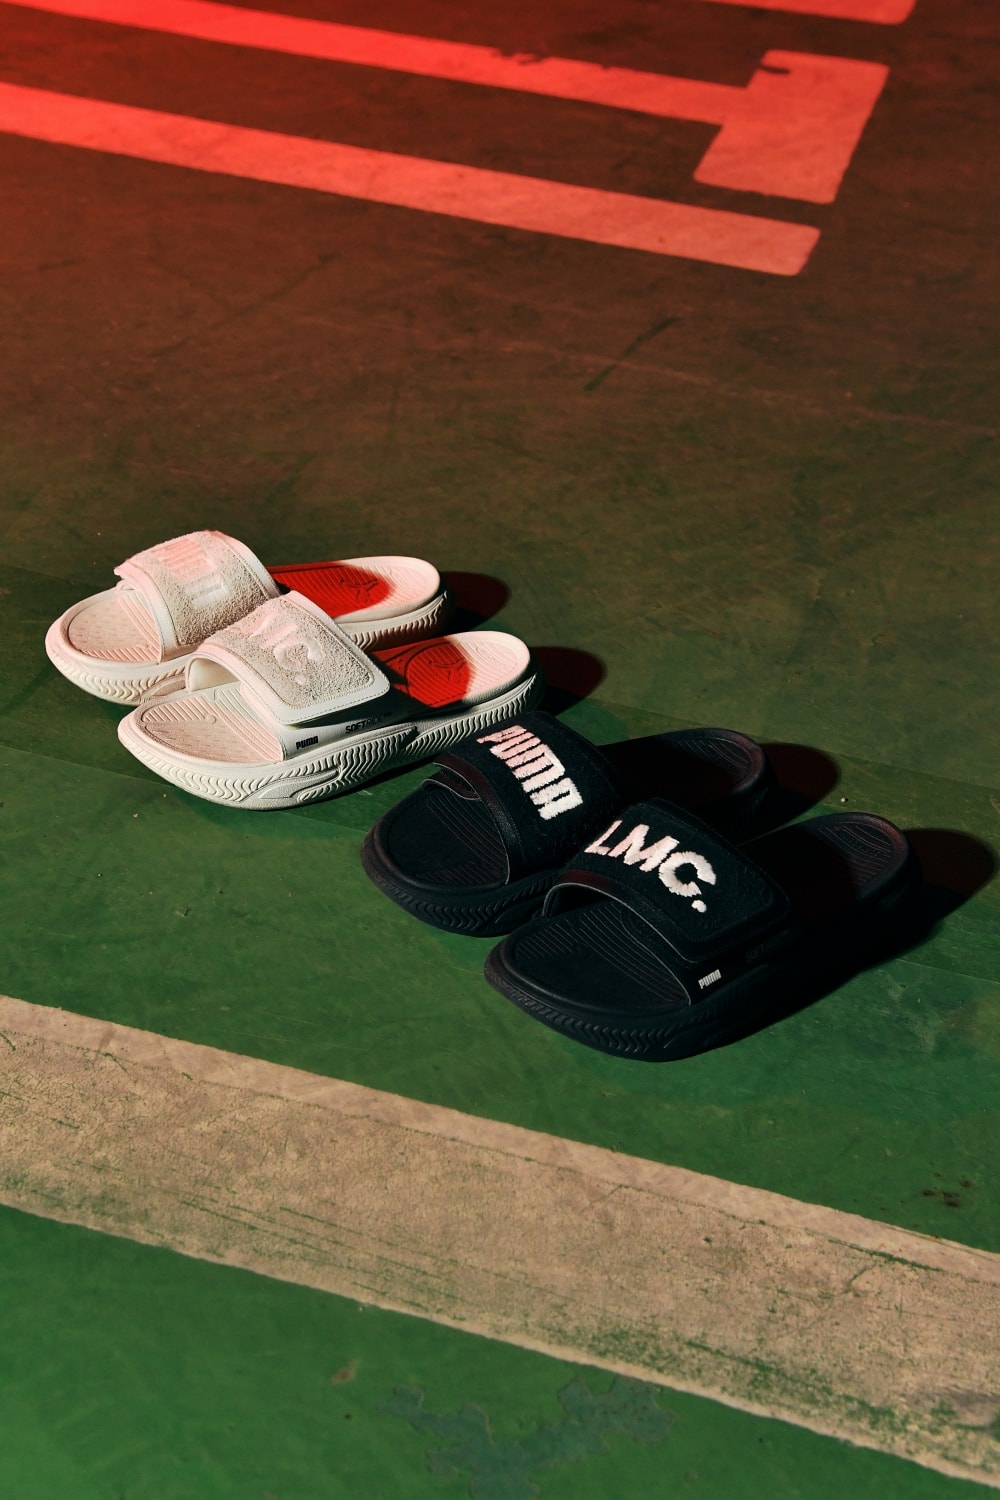 푸마 x LMC, 첫 번째 협업 컬렉션 출시 puma collaboration collection suede sneaker